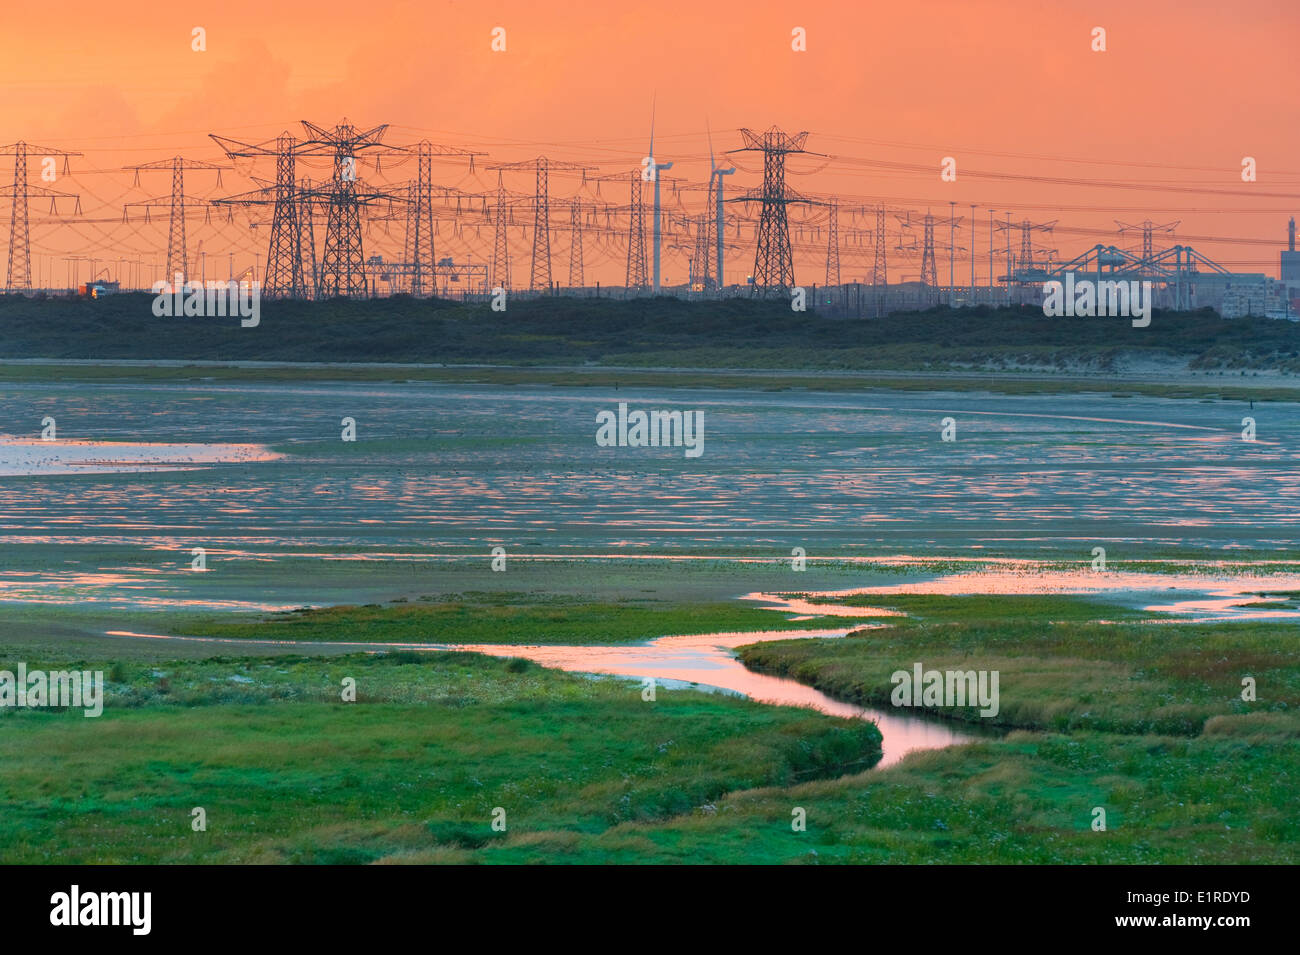 Marismas de agua salada a lo largo de la costa holandesa durante el verano con la industria del puerto de Rotterdam en el horizonte Foto de stock